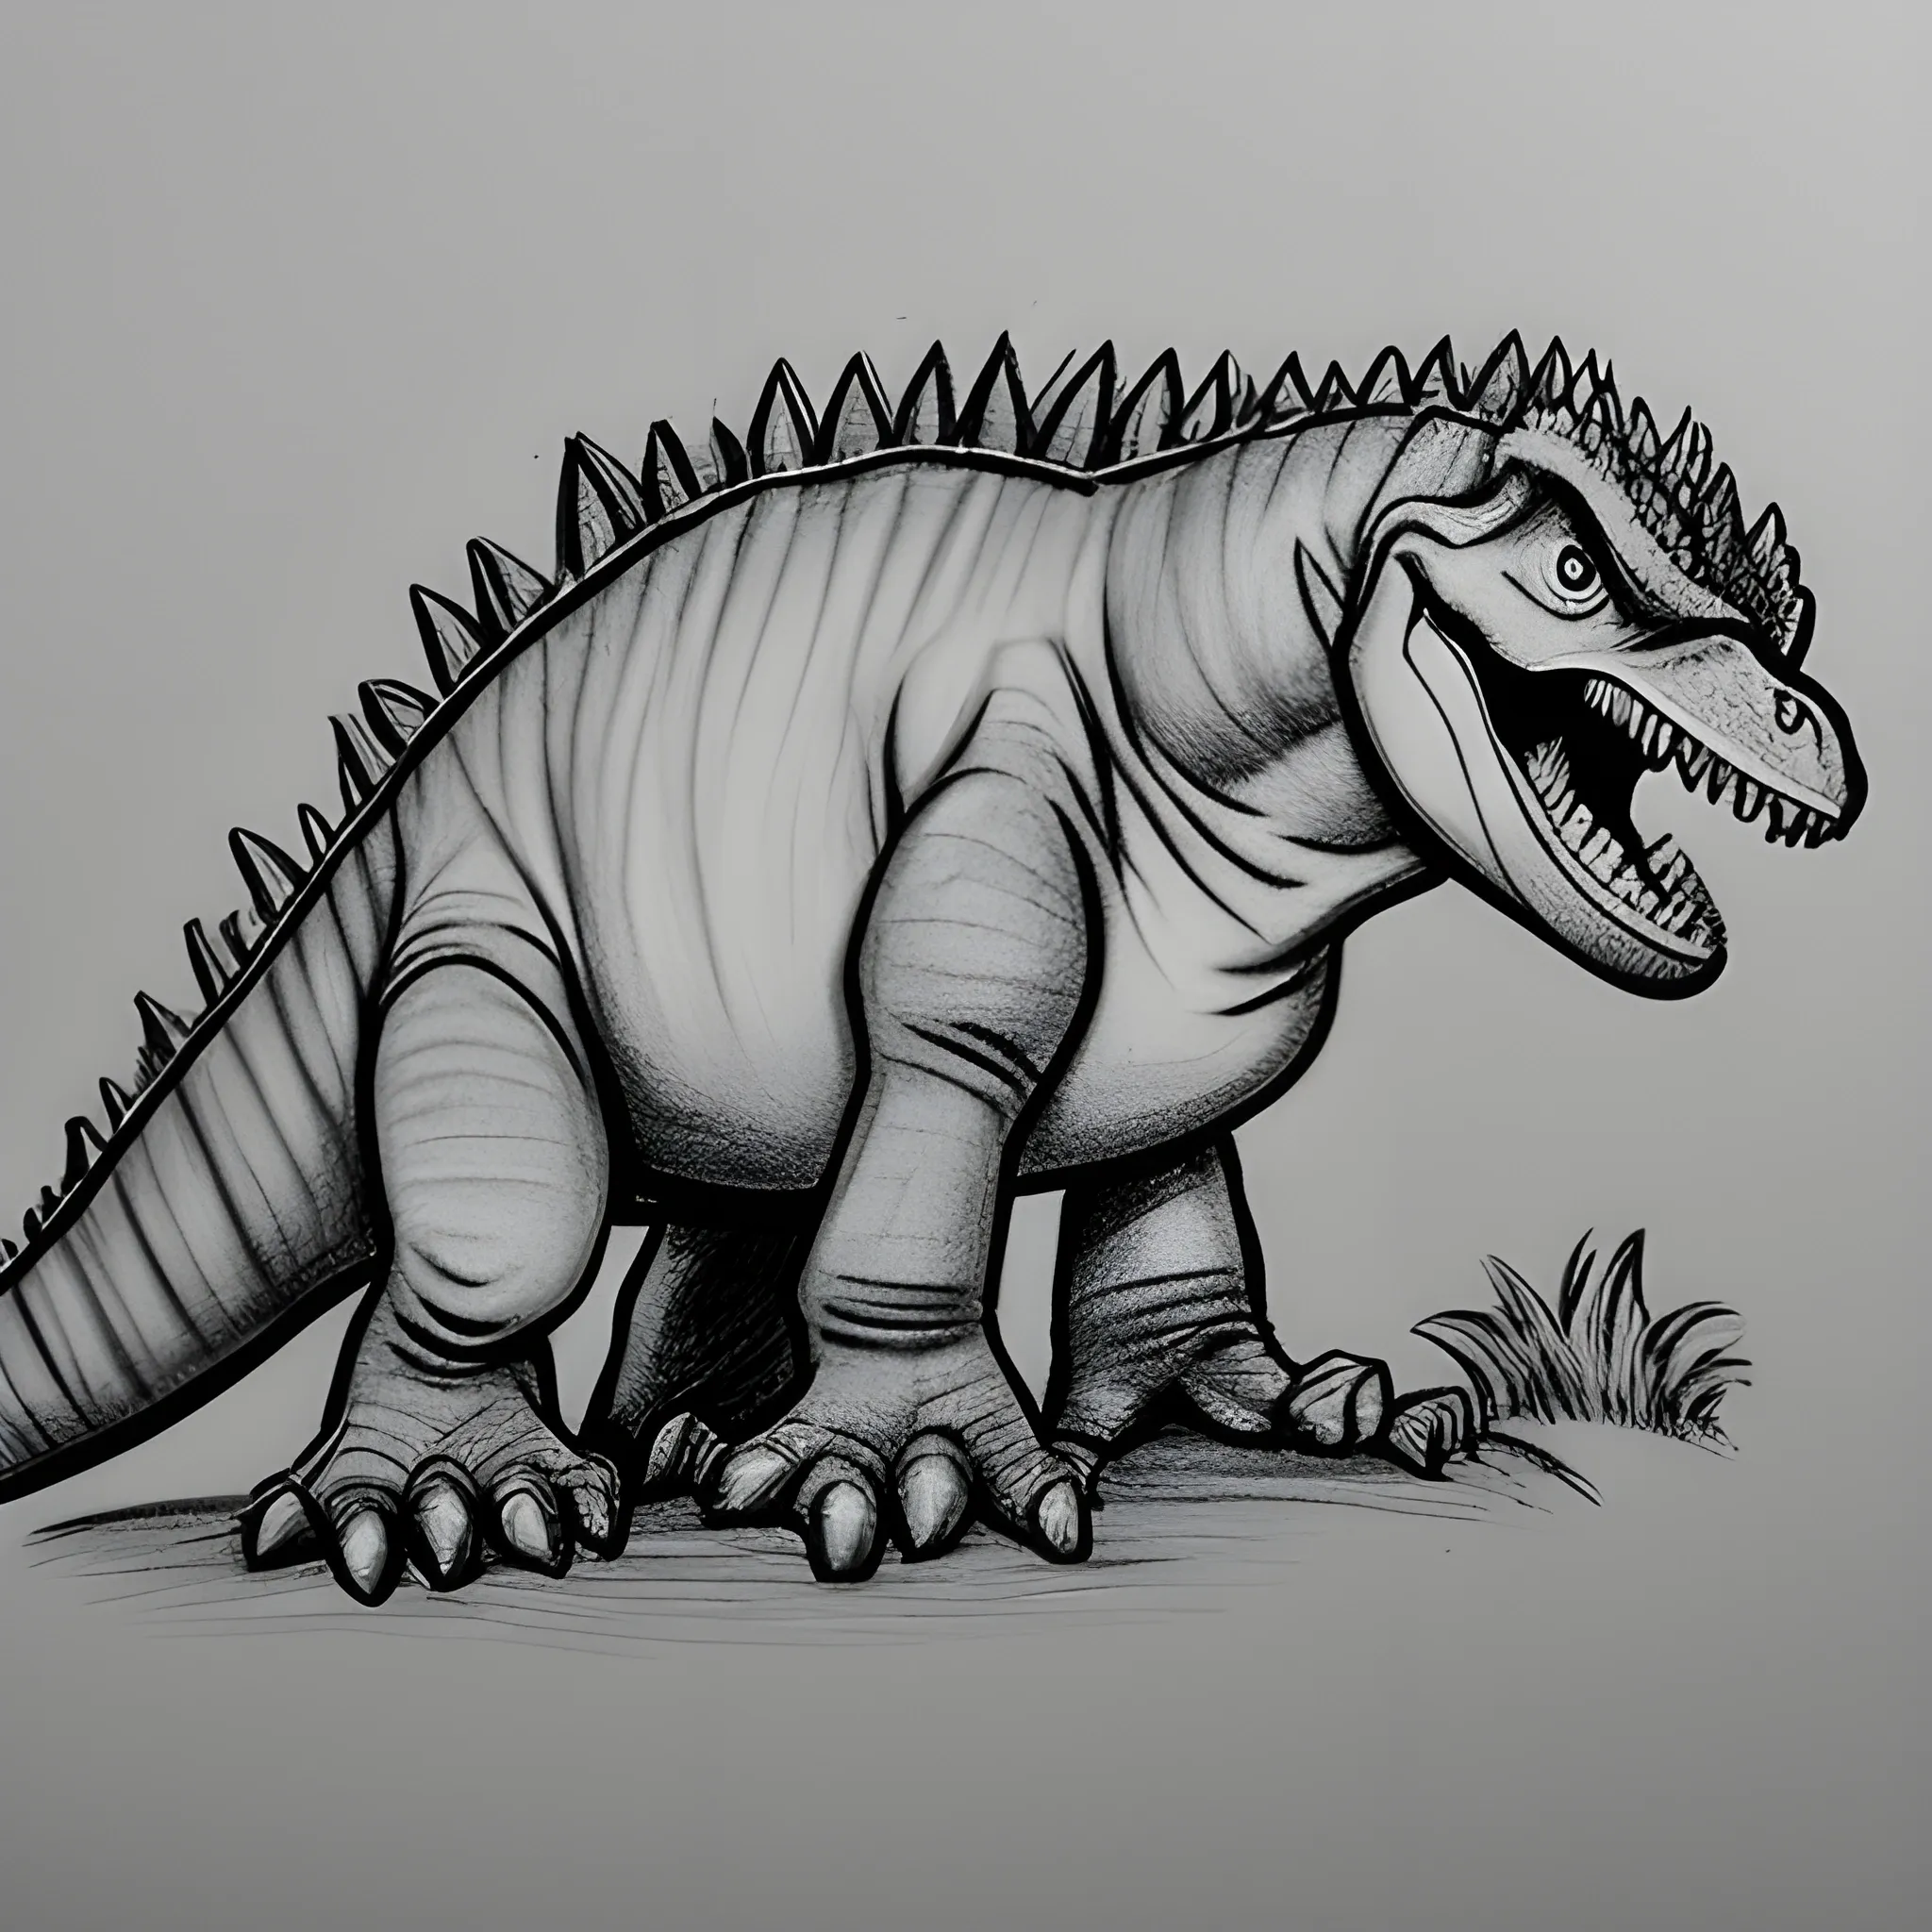 desenho de colorir para crianças, dinossauro em uma selva, de fr